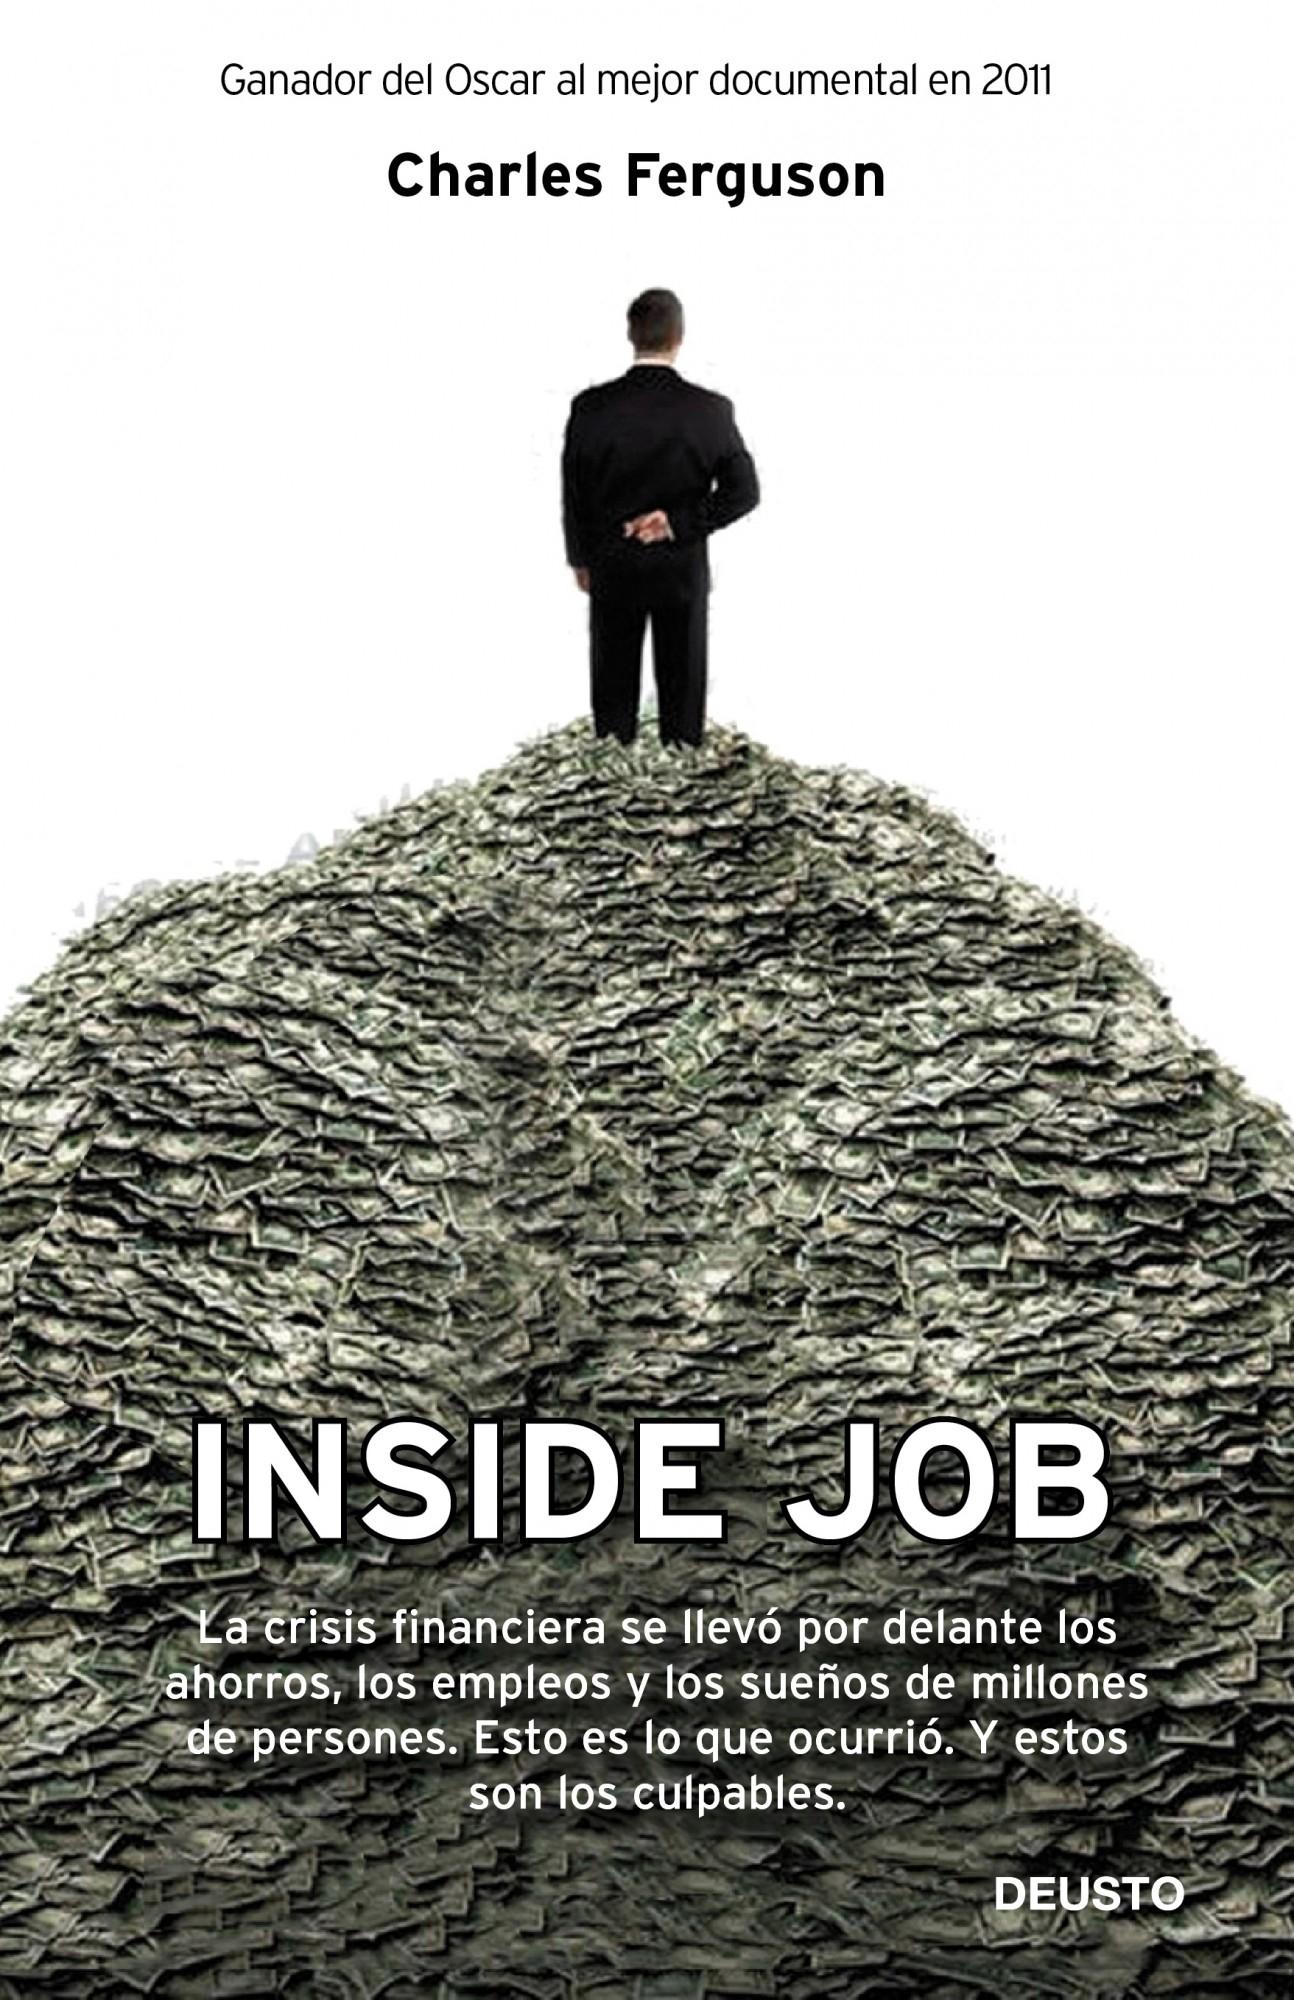 Inside Job "La crisis financiera se llevó por delante los ahorros, los emple". 